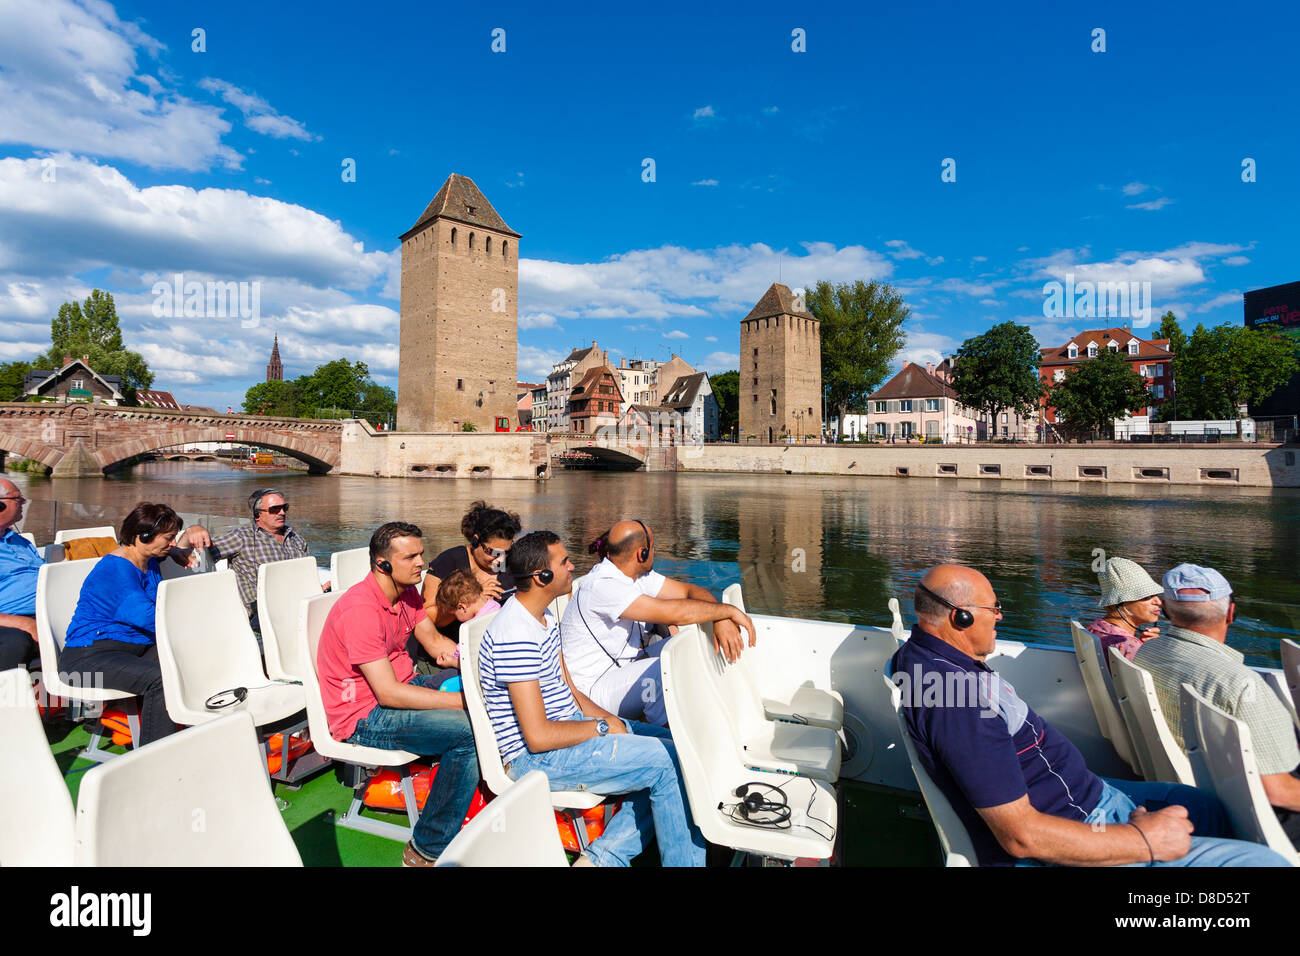 Vista desde el barco turístico a lo largo del río Ill y Ponts Couvers / puentes cubiertos en el distrito de Petite France de Estrasburgo, Alsacia, Francia Foto de stock